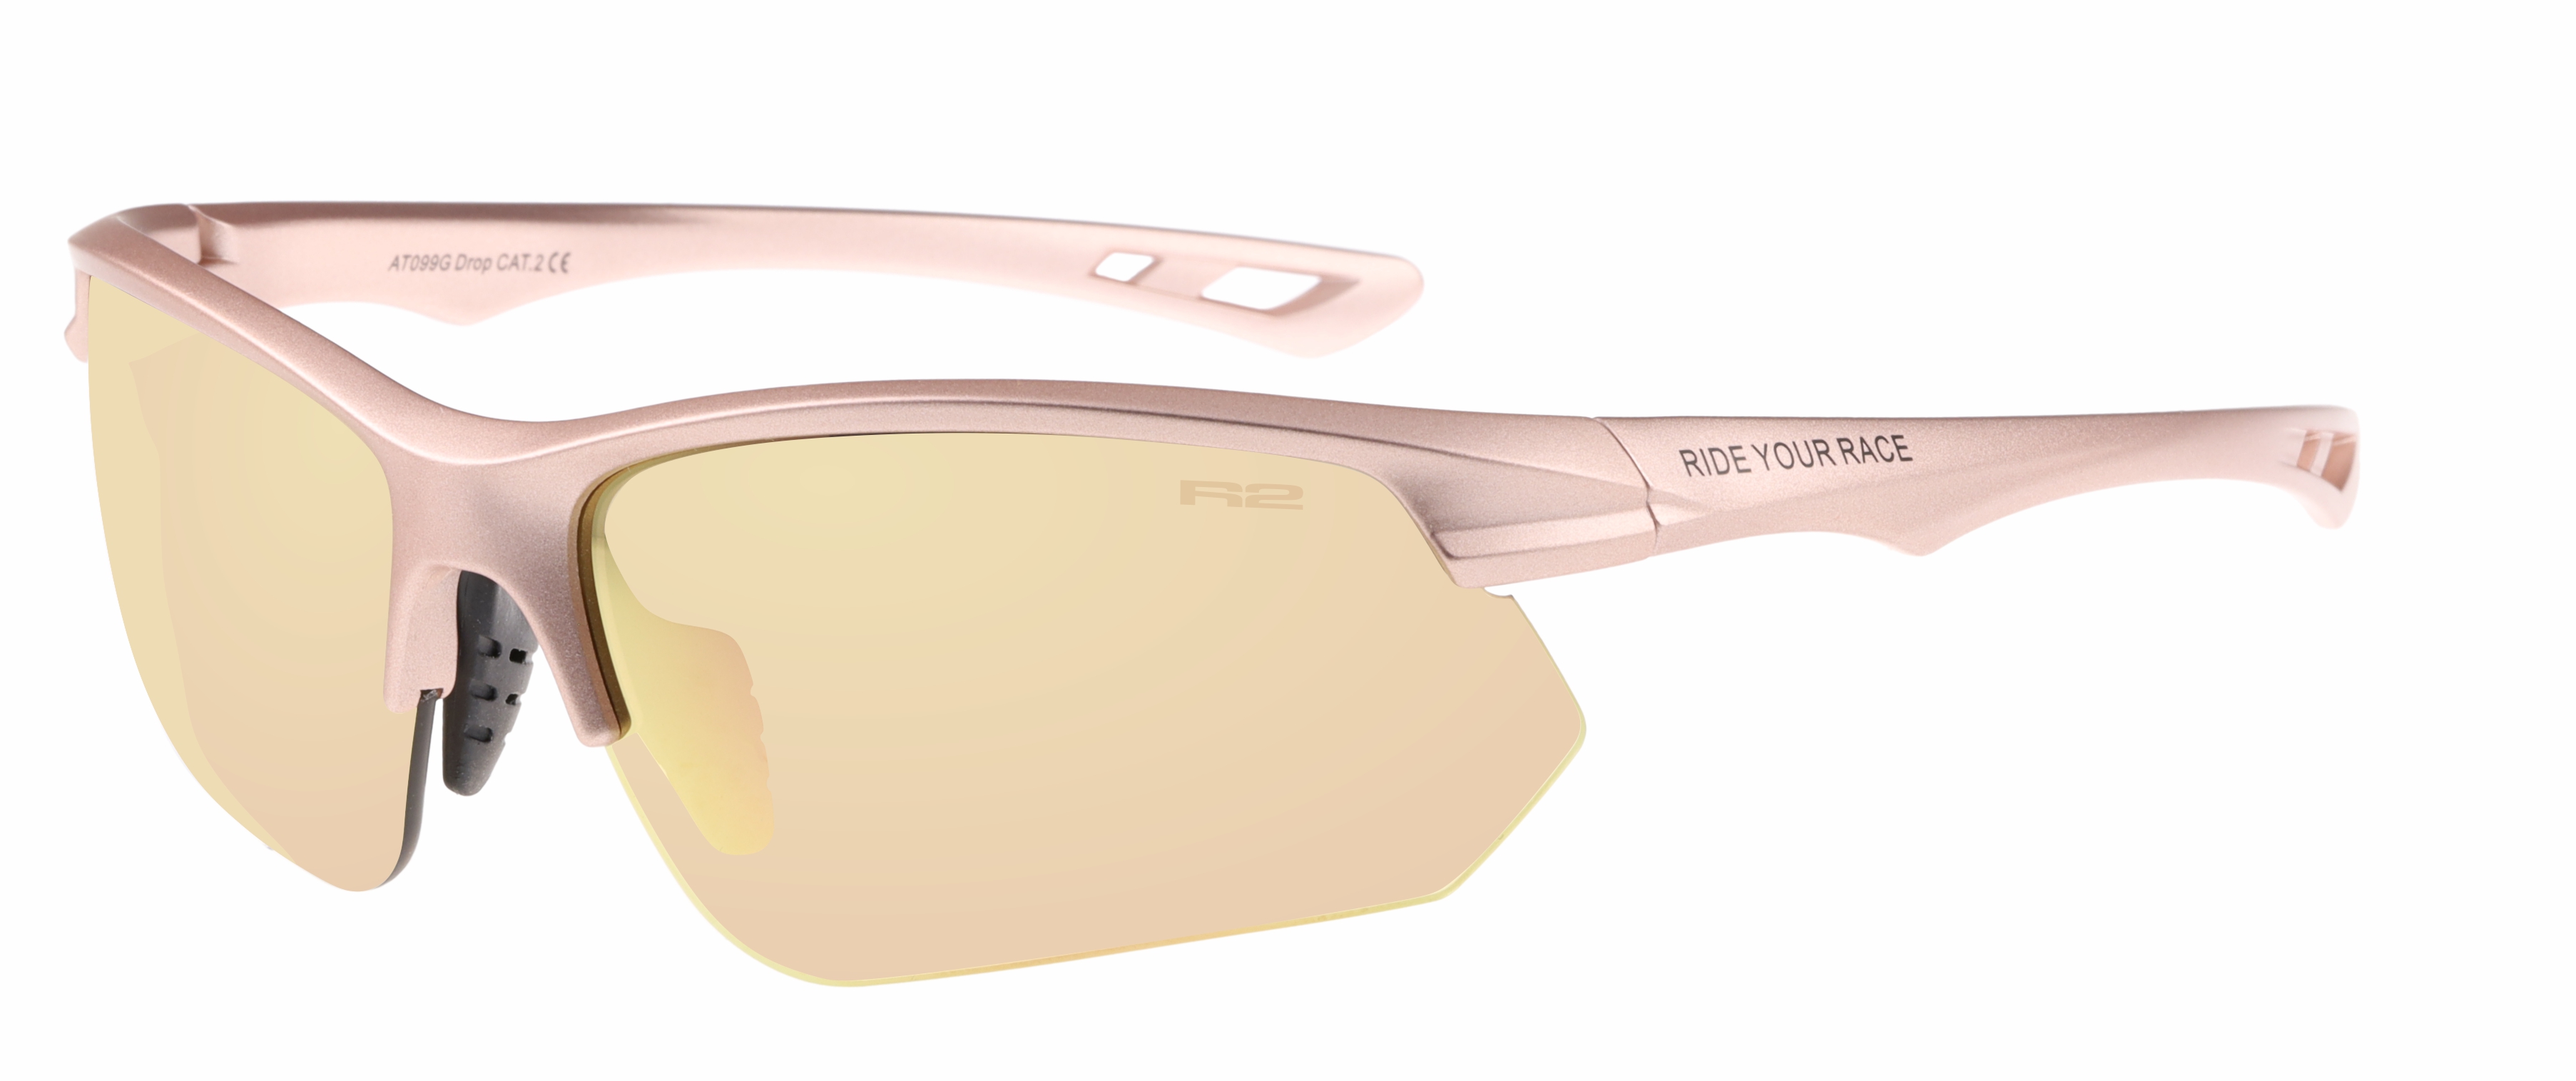 Sport sunglasses R2 DROP AT099G standard